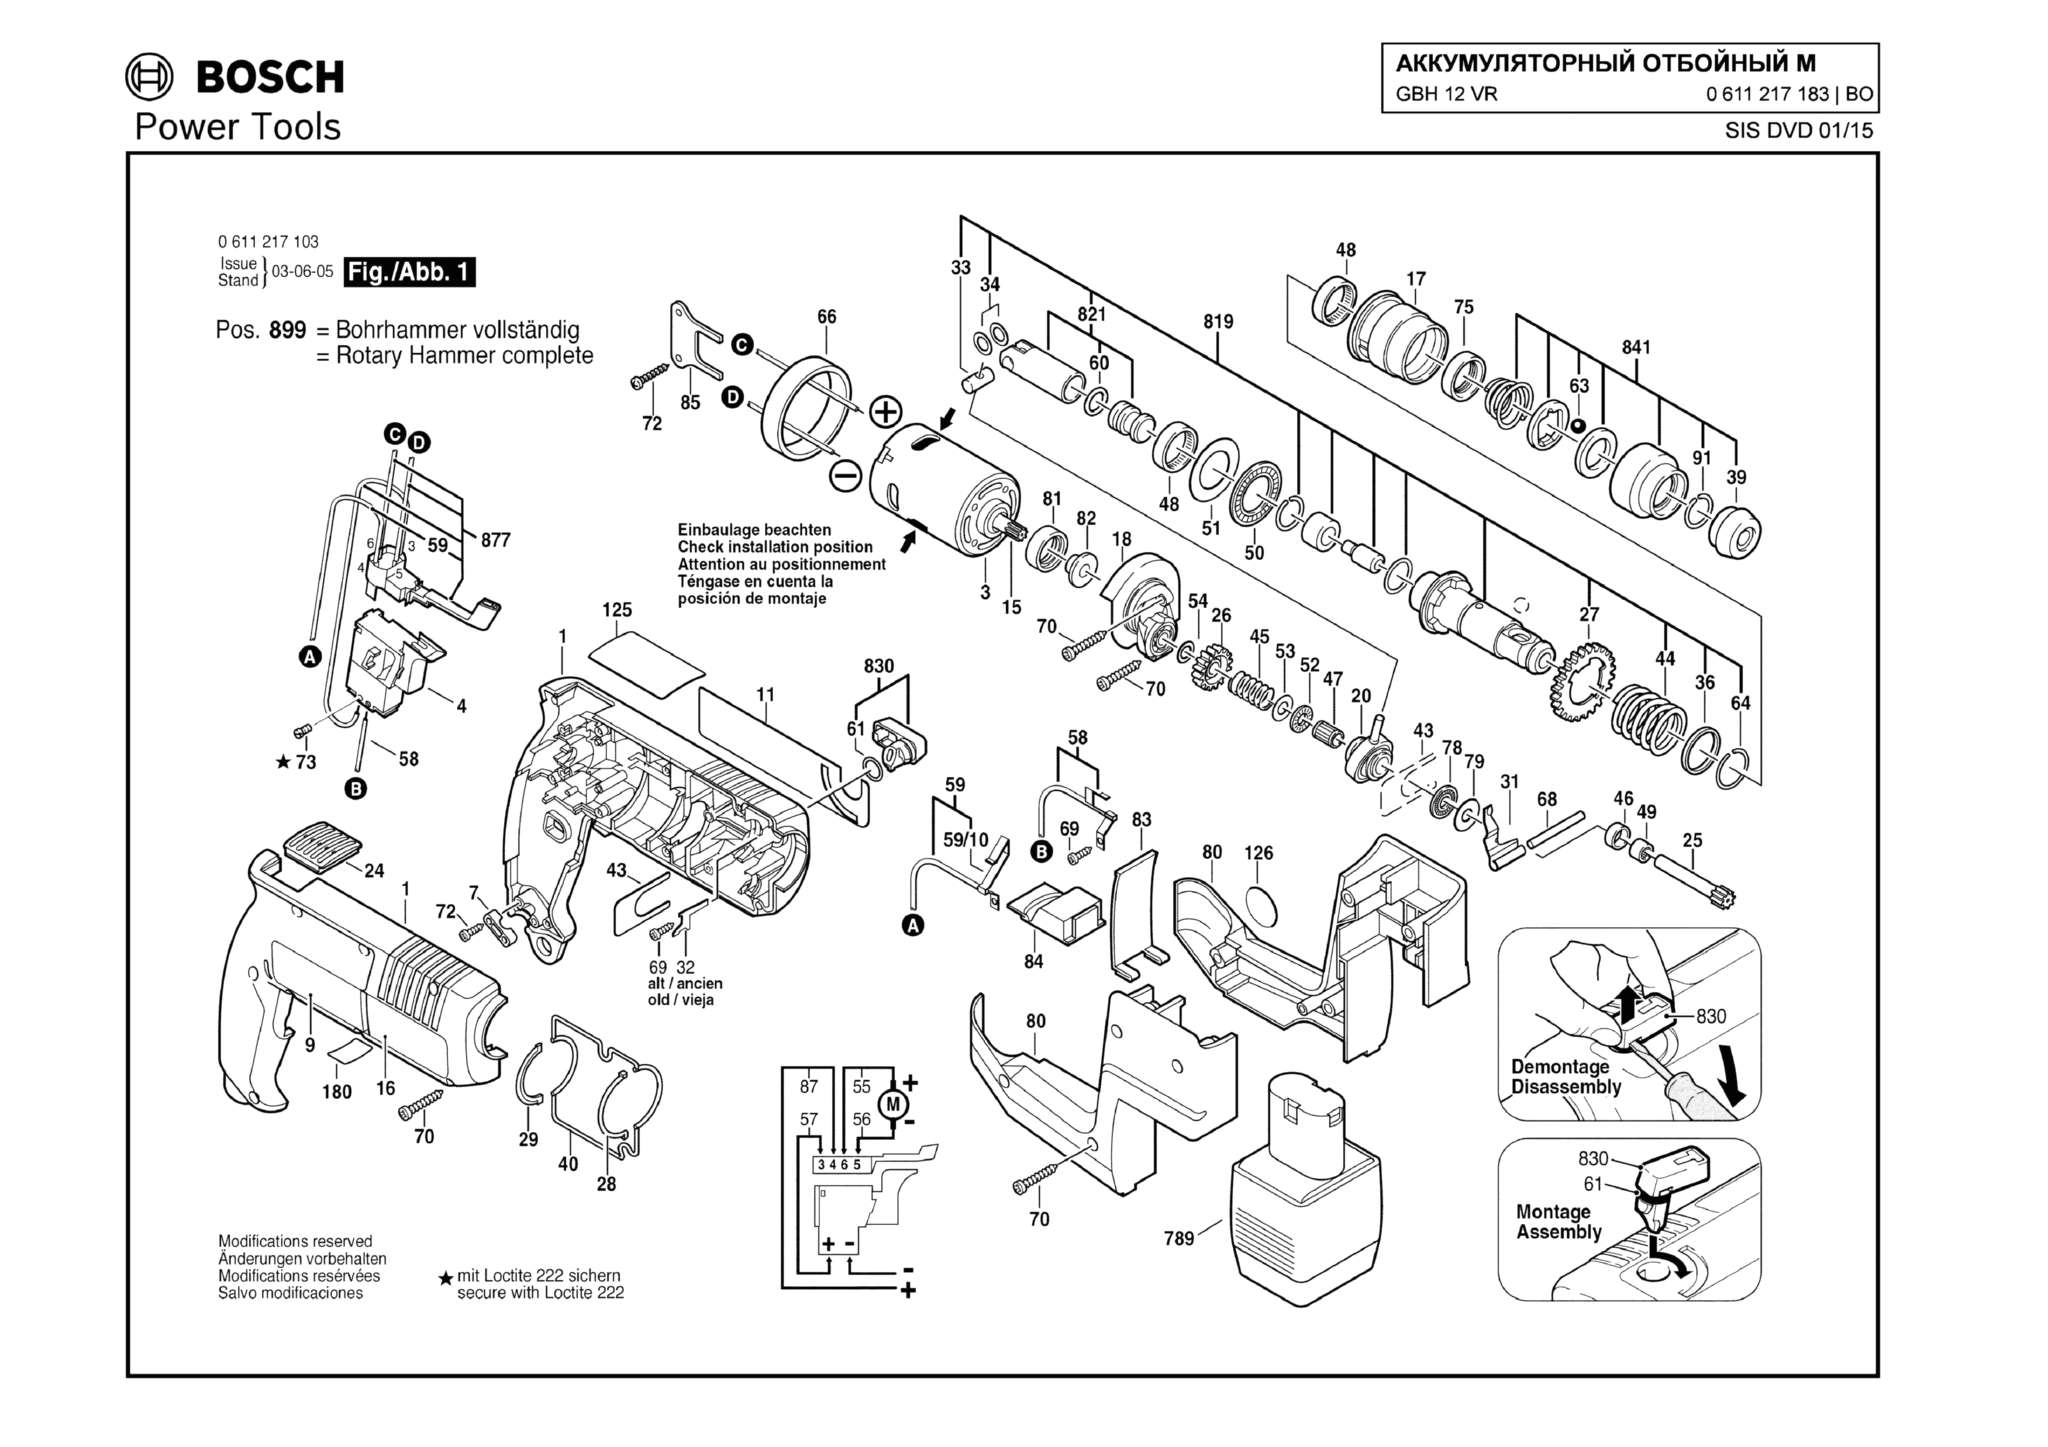 Запчасти, схема и деталировка Bosch GBH 12 VR (ТИП 0611217183) (ЧАСТЬ 1)